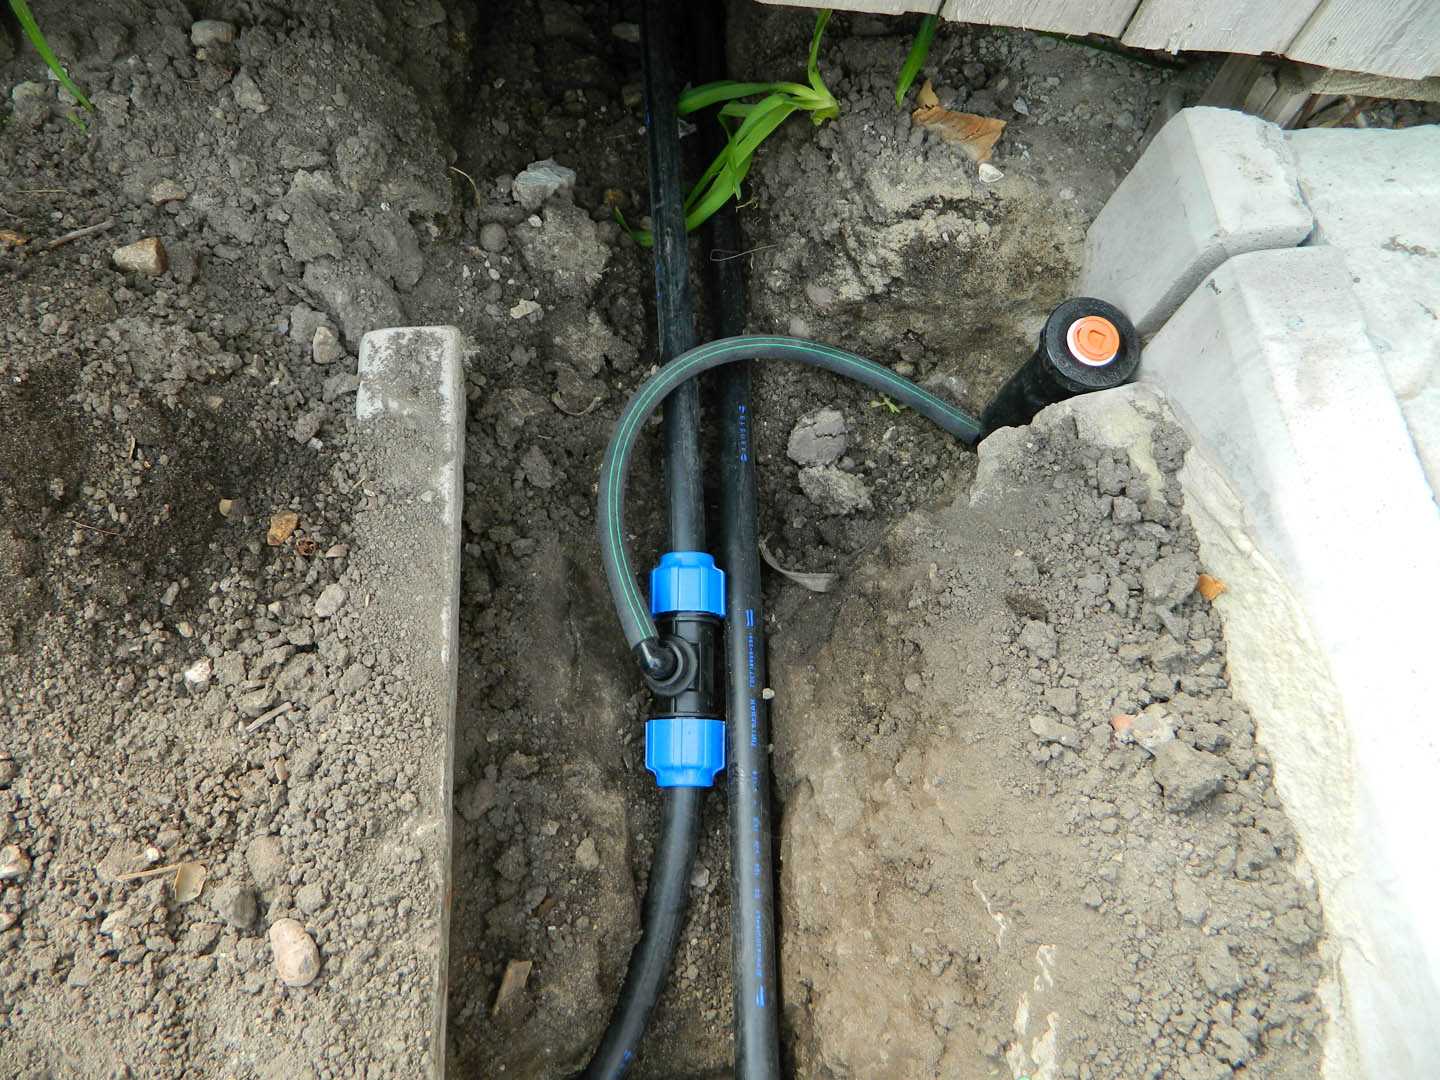 Водоснабжение частного дома из скважины своими руками - инструкция по монтажу системы со схемами